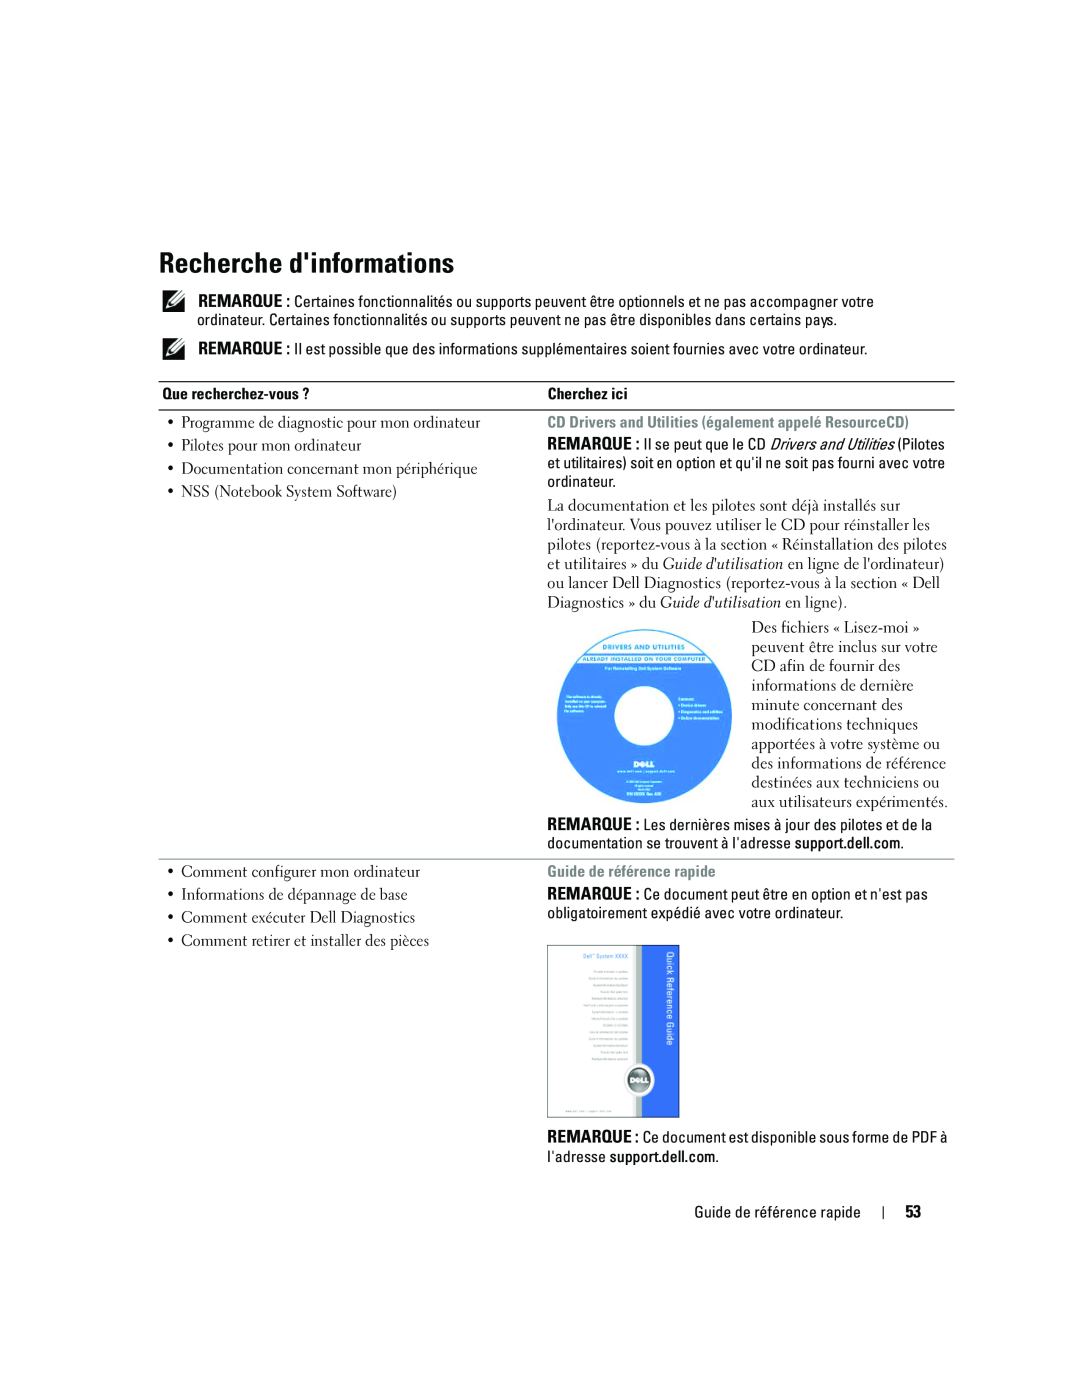 Dell ATG D620 manual Recherche dinformations, Guide de référence rapide 